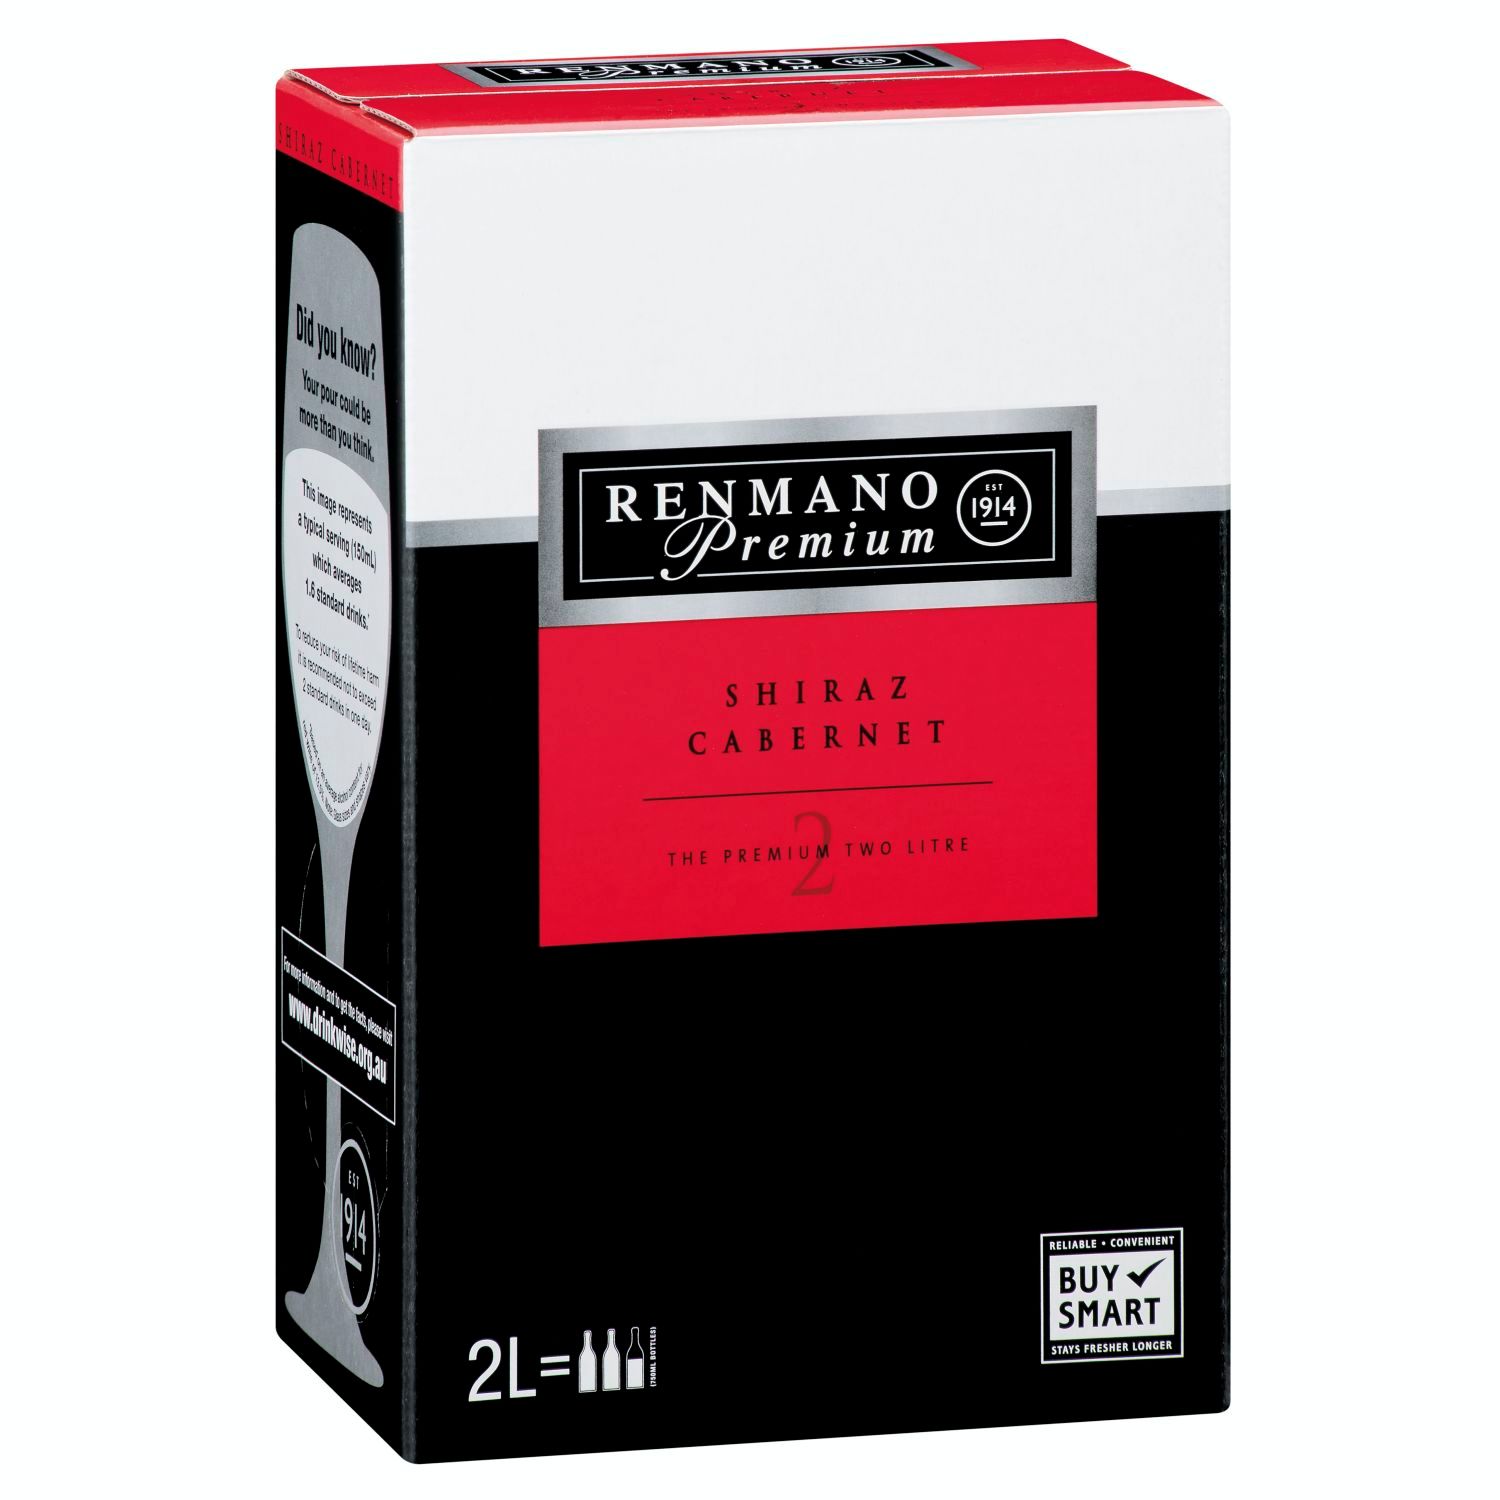 Renmano Premium Shiraz Cabernet Cask 2L<br /> <br />Alcohol Volume: 13.00%<br /><br />Pack Format: Cask<br /><br />Standard Drinks: 20.5</br /><br />Pack Type: Cask<br /><br />Country of Origin: Australia<br /><br />Region: Multi-Regional Blend<br /><br />Vintage: Non Vintage<br />